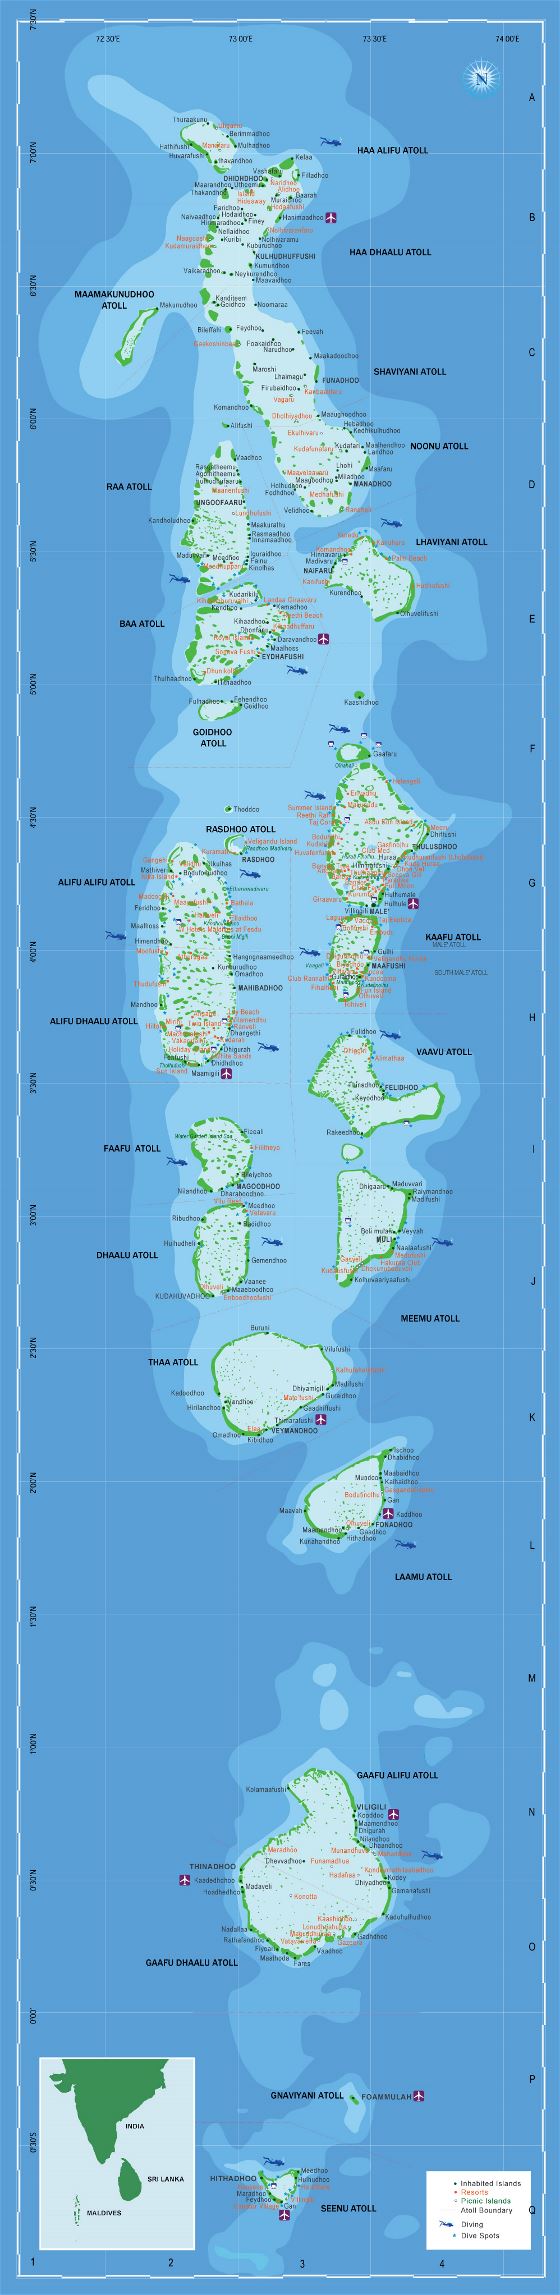 Grande mapa turístico de Maldivas